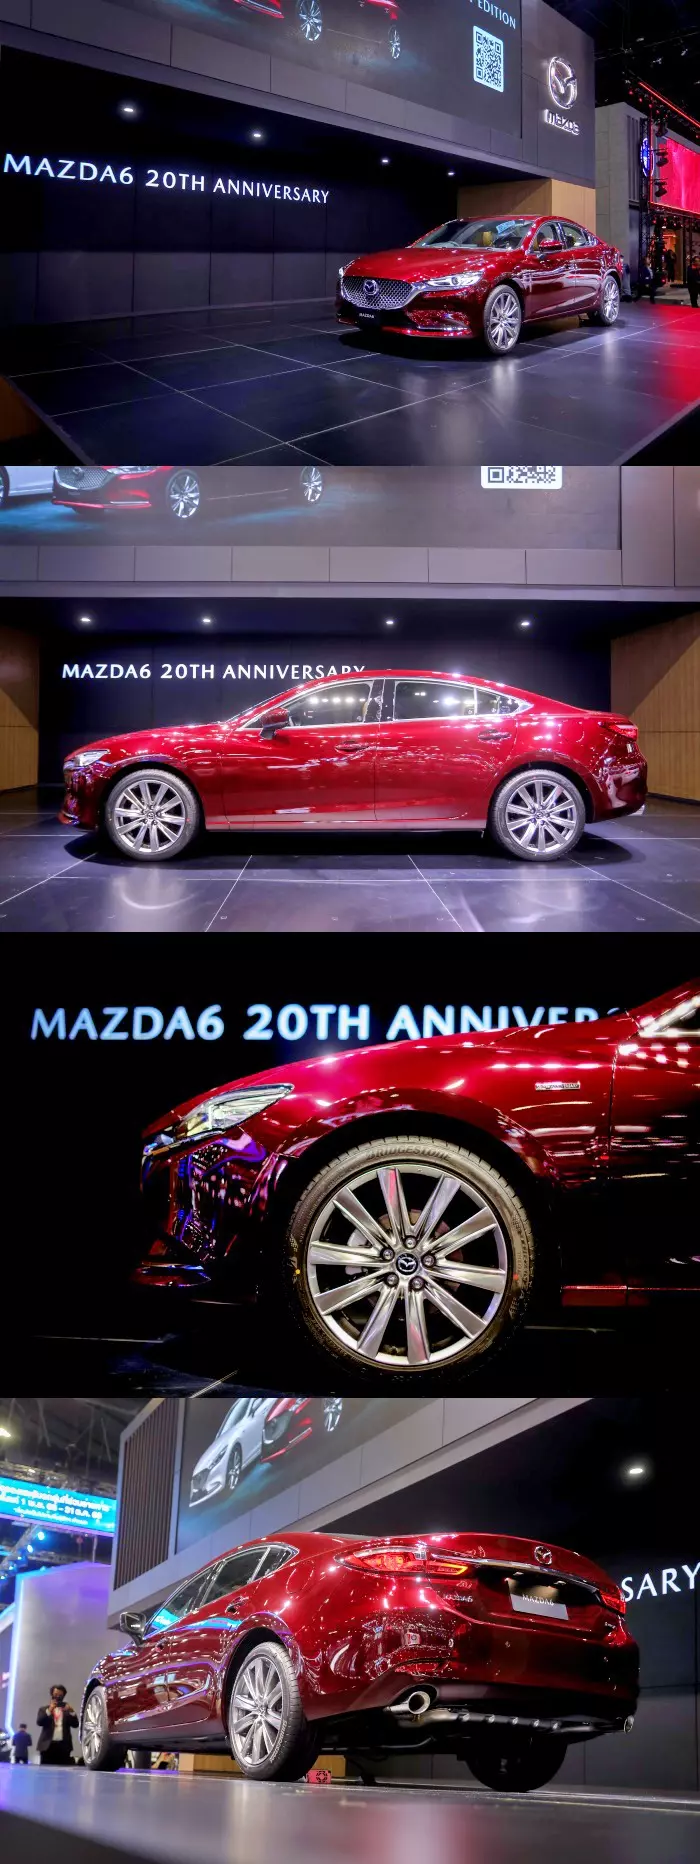  Mazda 6 20th Anniversary Edition